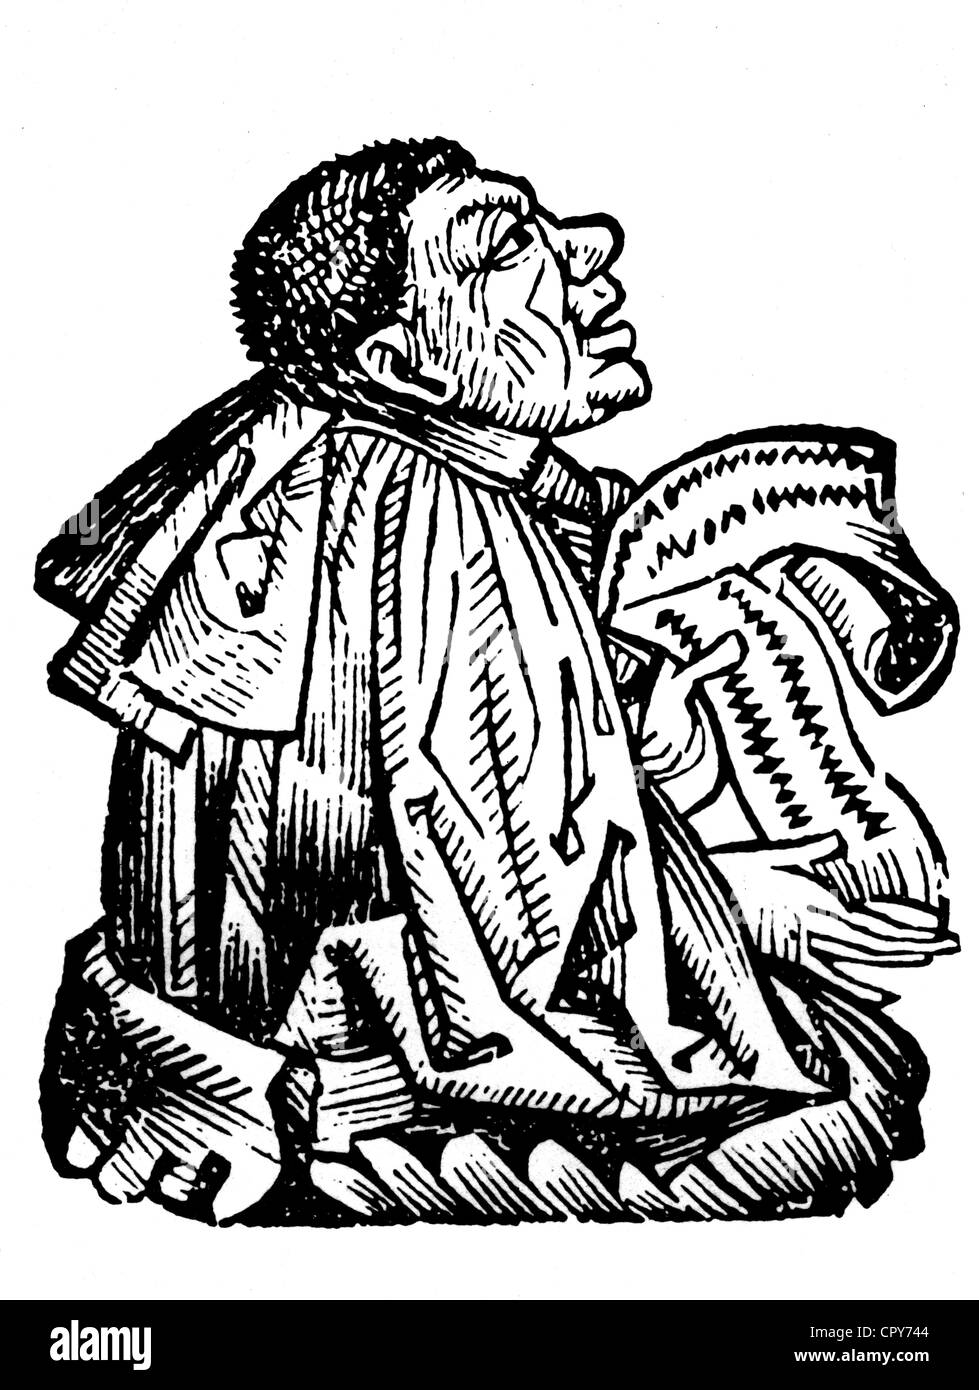 Von Mytilene Pittacus, ca. 650 v. Chr. - 578 v. Chr., Politiker und Philosoph, einer der Weisen", Holzschnitt aus dem "World Chronicle" von Hartmann Schedel (1493), Artist's Urheberrecht nicht gelöscht werden Stockfoto